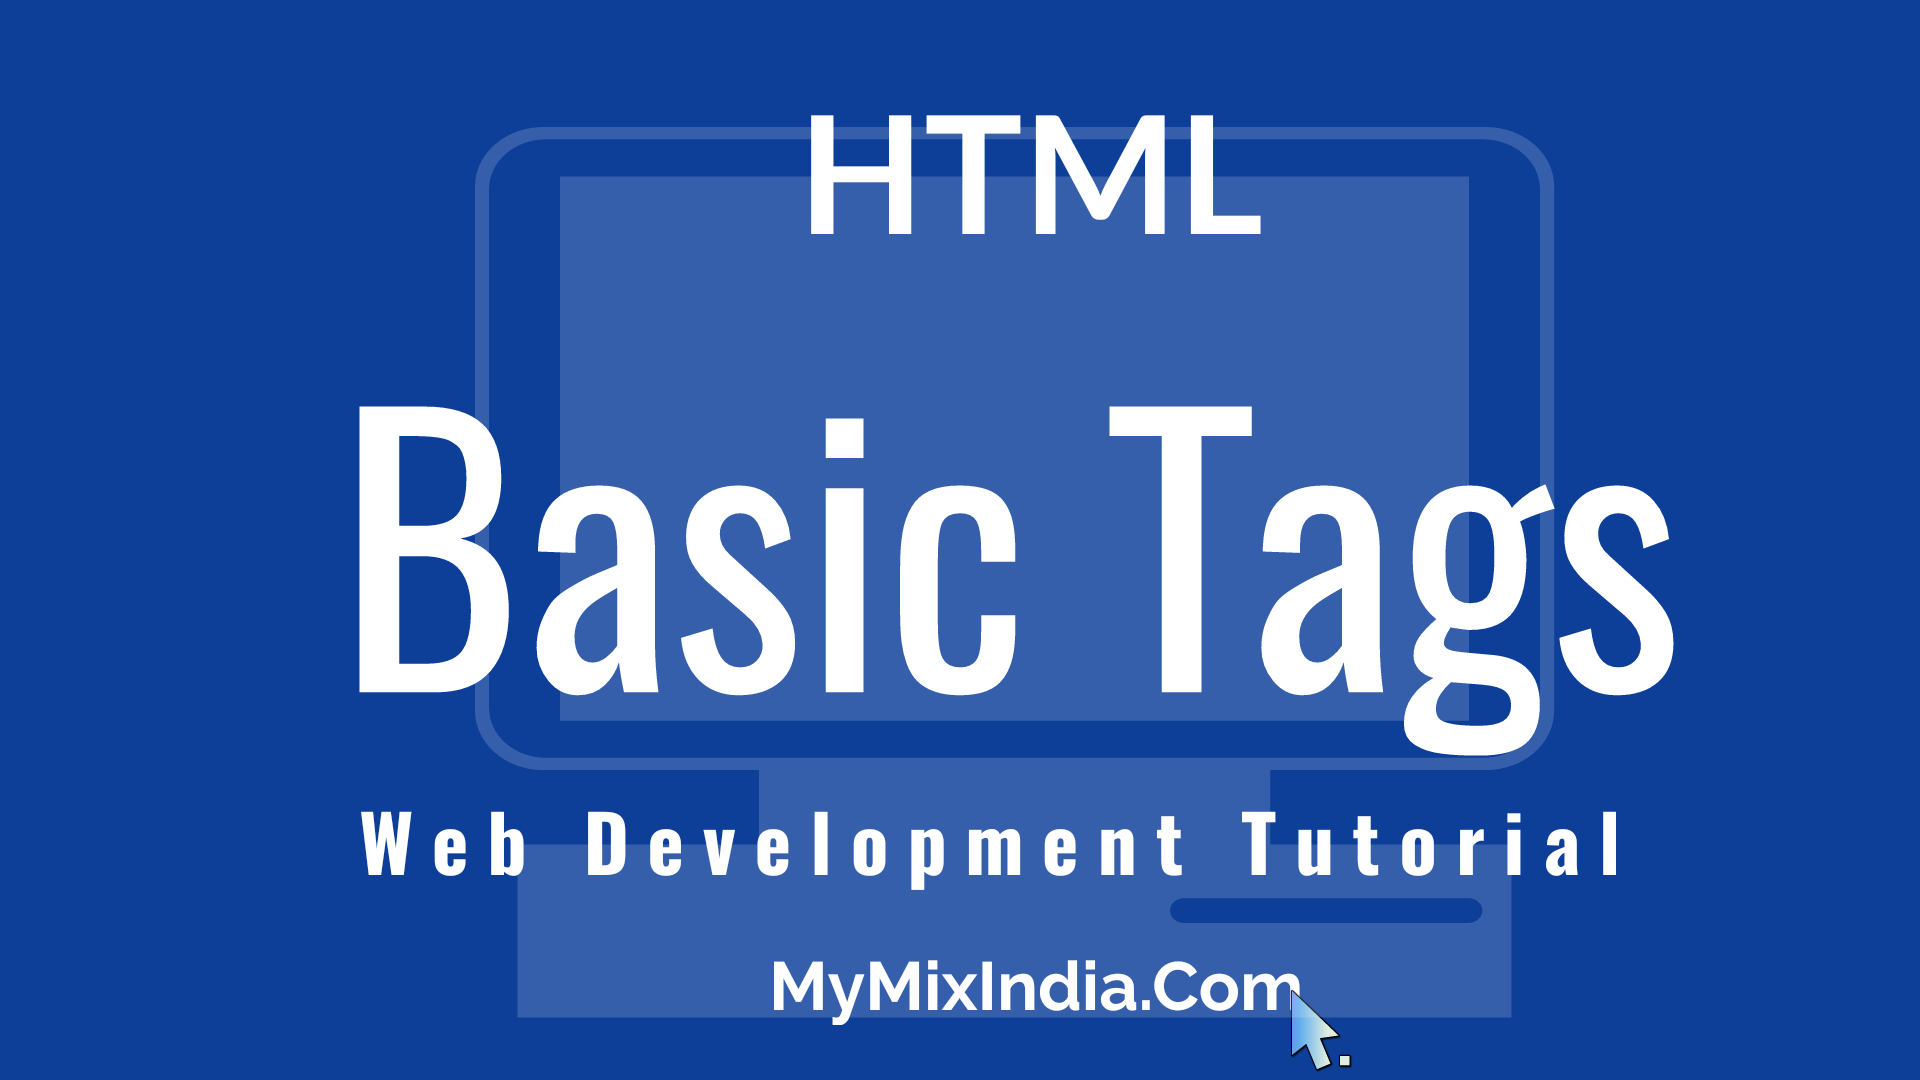 mmi-html-tutorials-html-Basic-Tags-web-development-tutorials